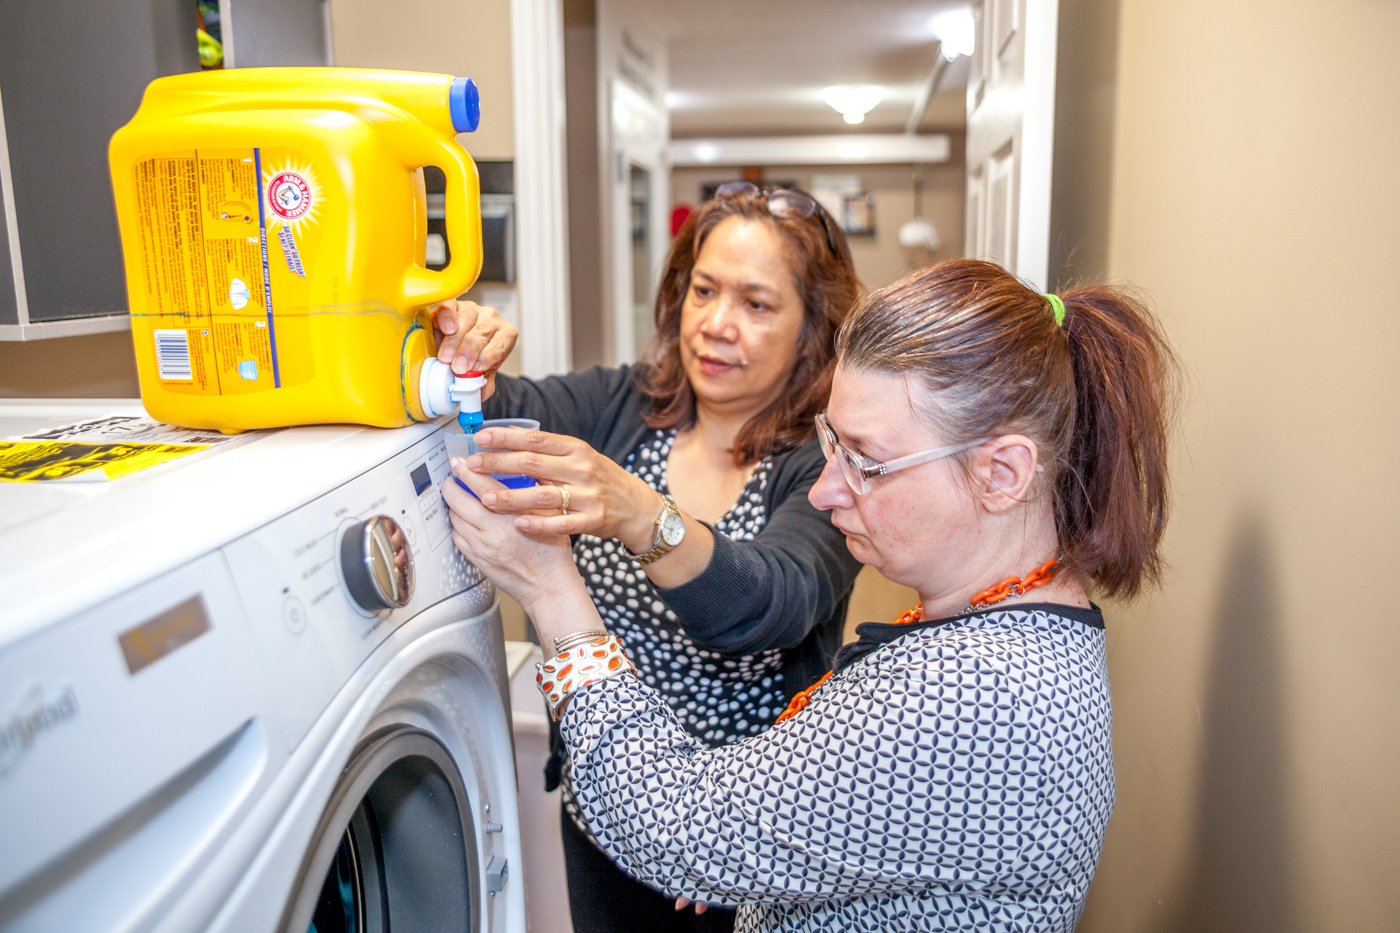 Une femme verse du détergent à lessive à l’aide de son interprète tactile pour faire sa lessive avec plus d’autonomie.